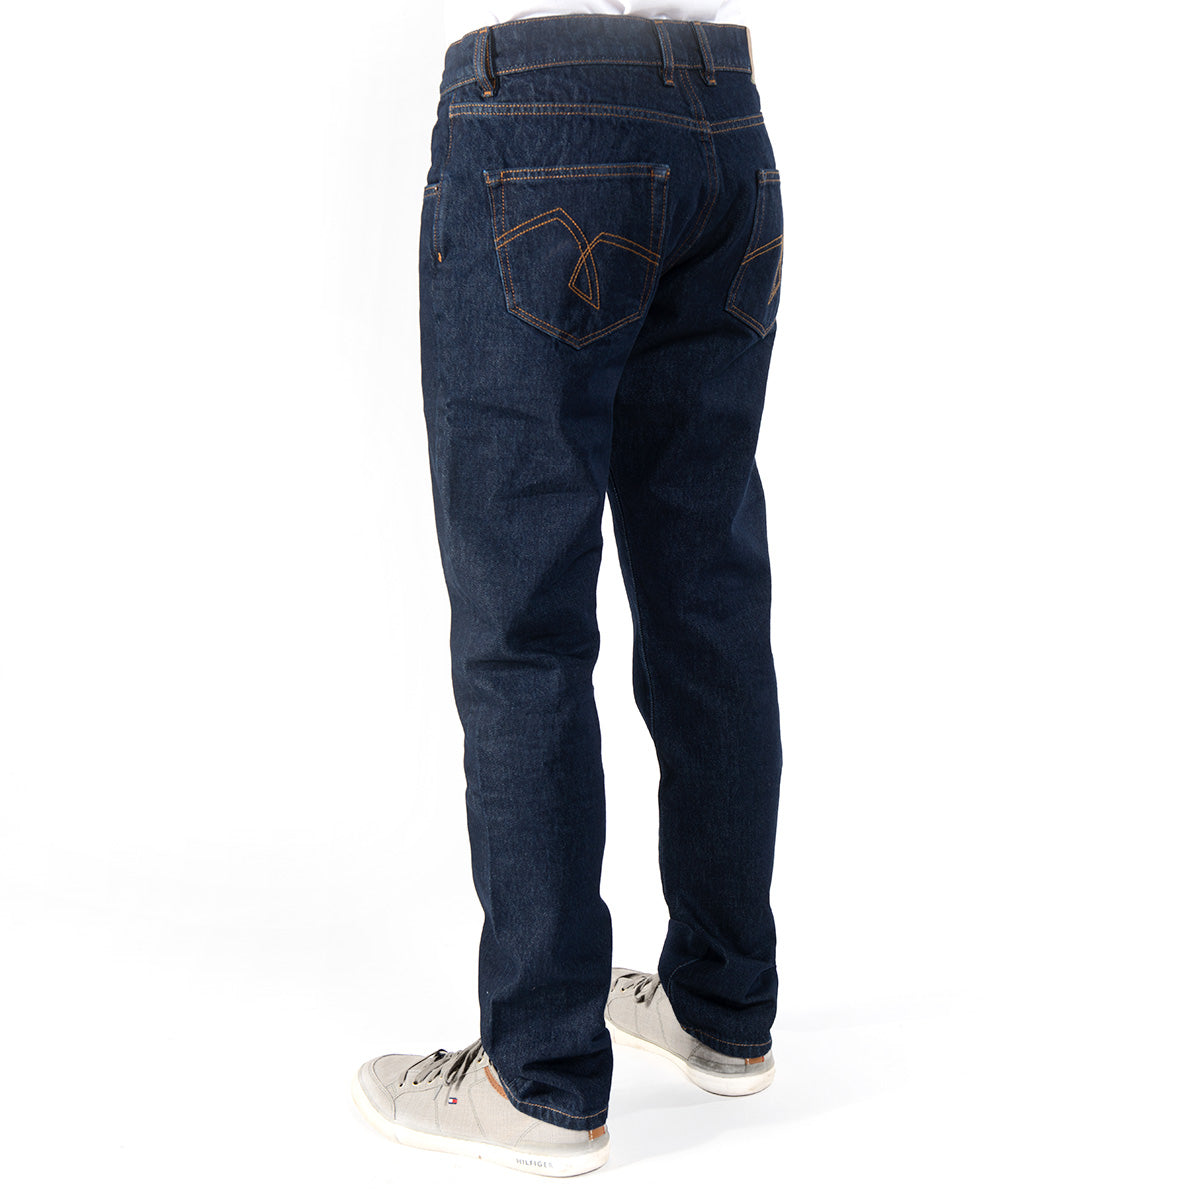 Ein Bild einer nachhaltigen Jeans von Fairjeans, hergestellt aus 100% biologisch angebauter Baumwolle ohne Elasthan und in gerader Passform. Das Produktfoto zeigt die Jeans von vorne und betont ihre hohe Qualität und Nachhaltigkeit.